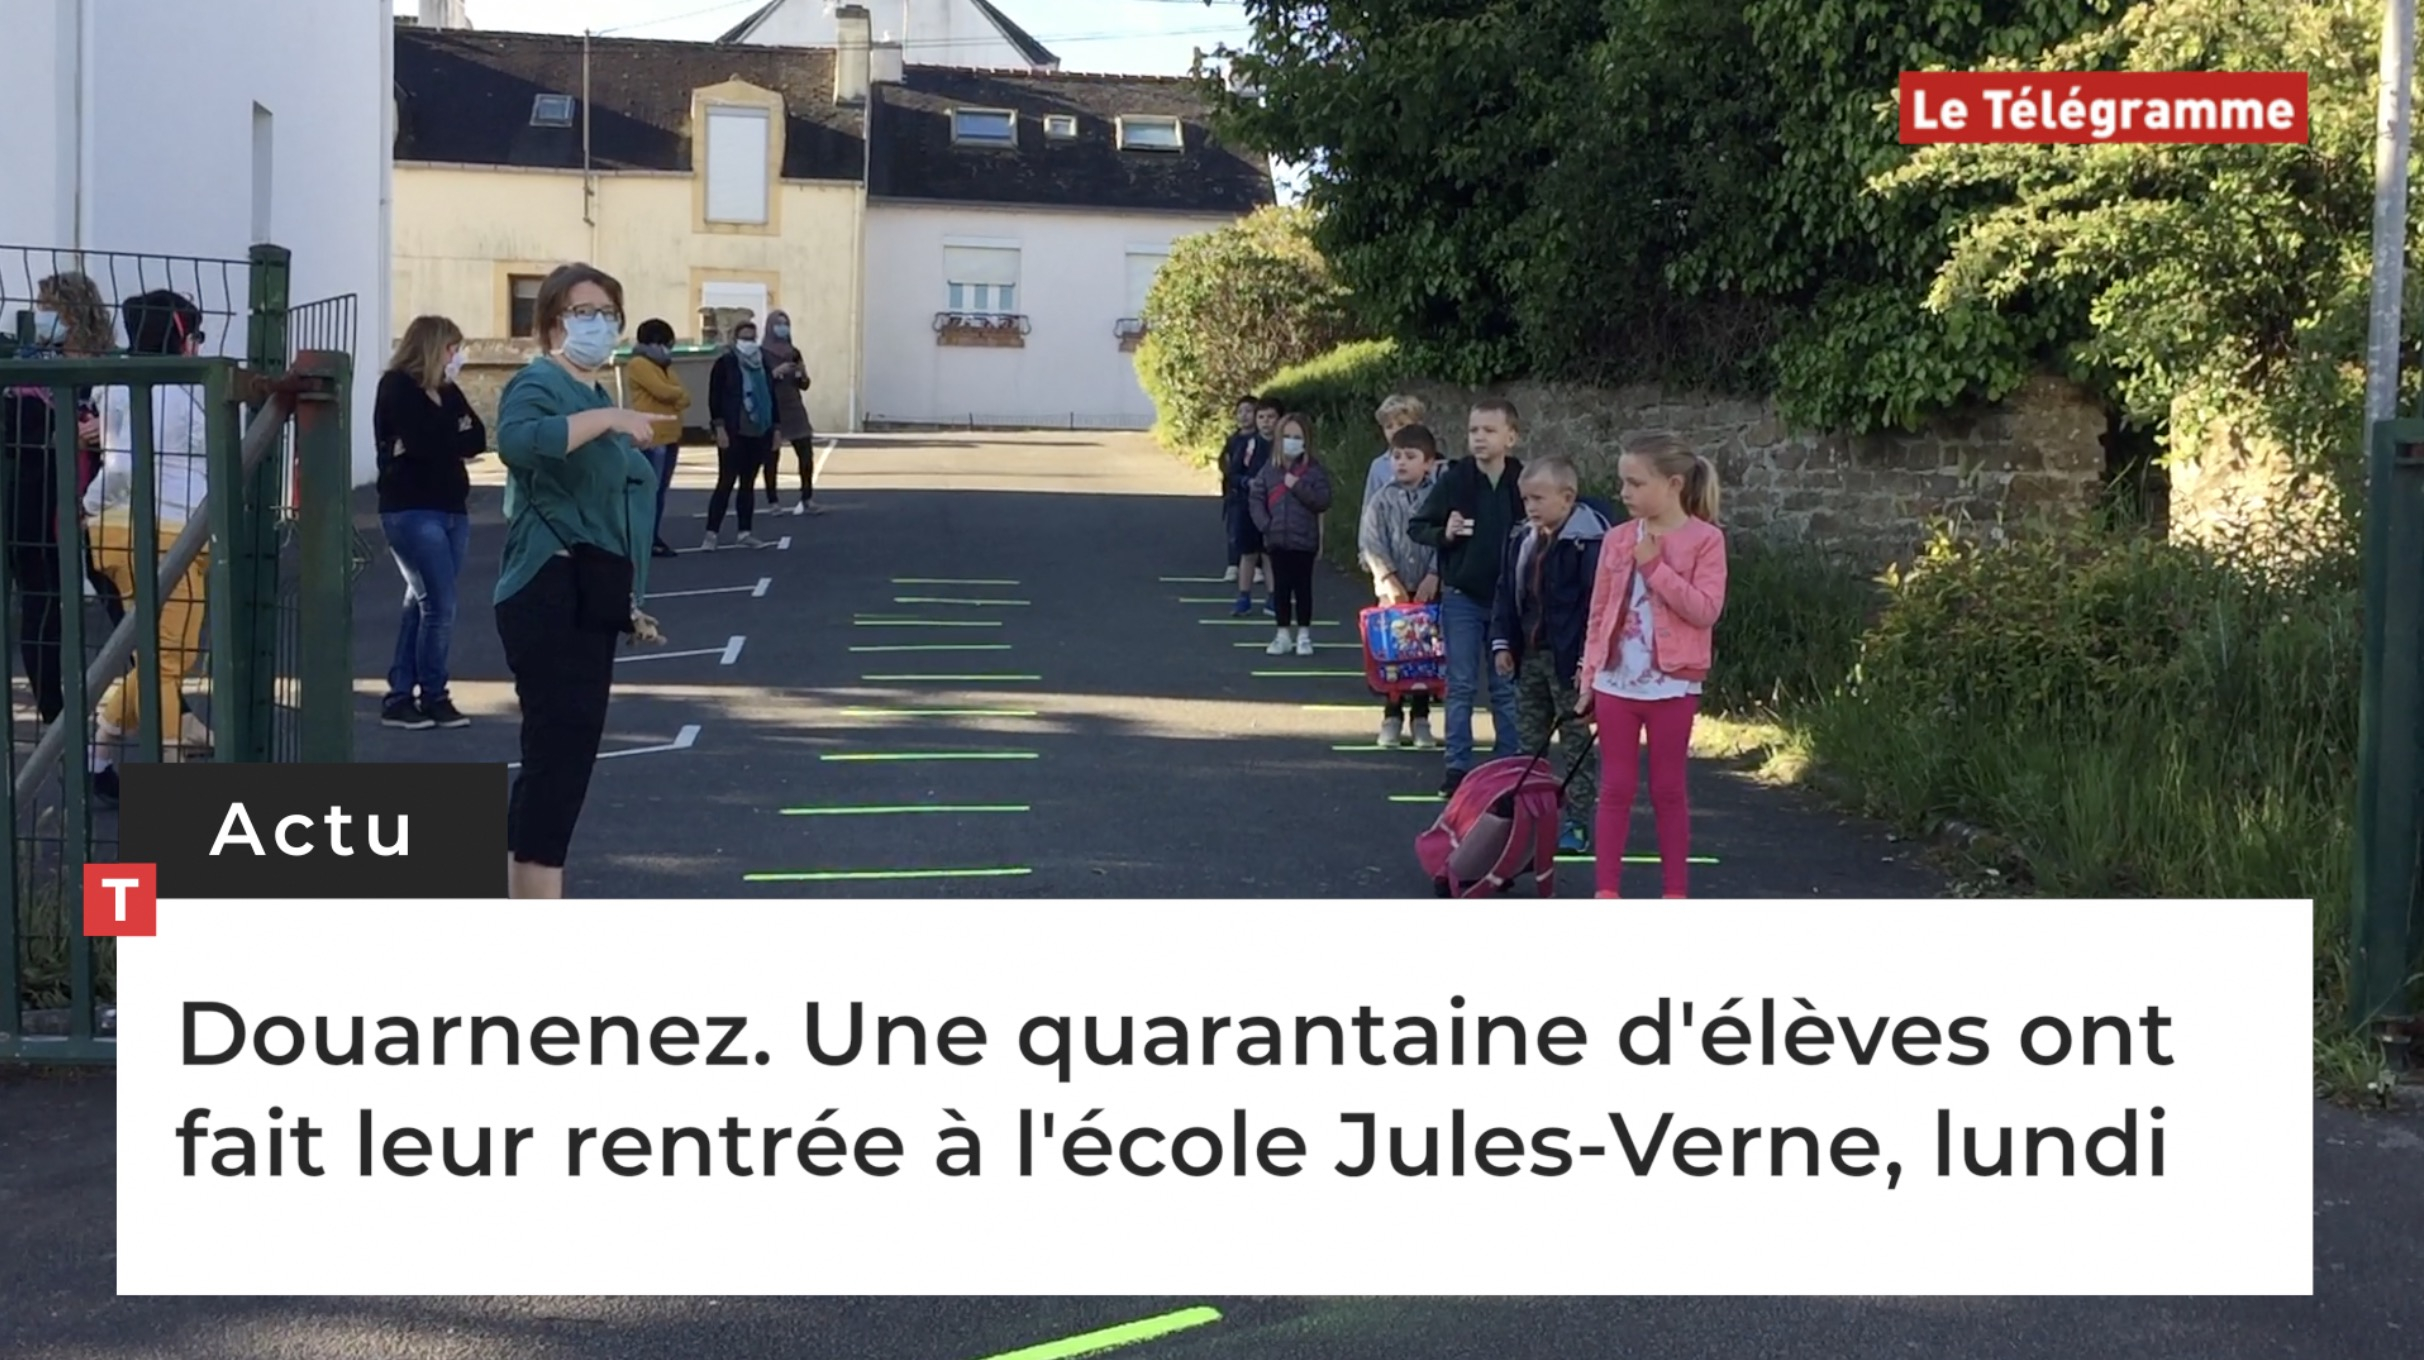 Douarnenez. Une quarantaine d'élèves ont fait leur rentrée à l'école Jules-Verne, lundi (Le Télégramme)